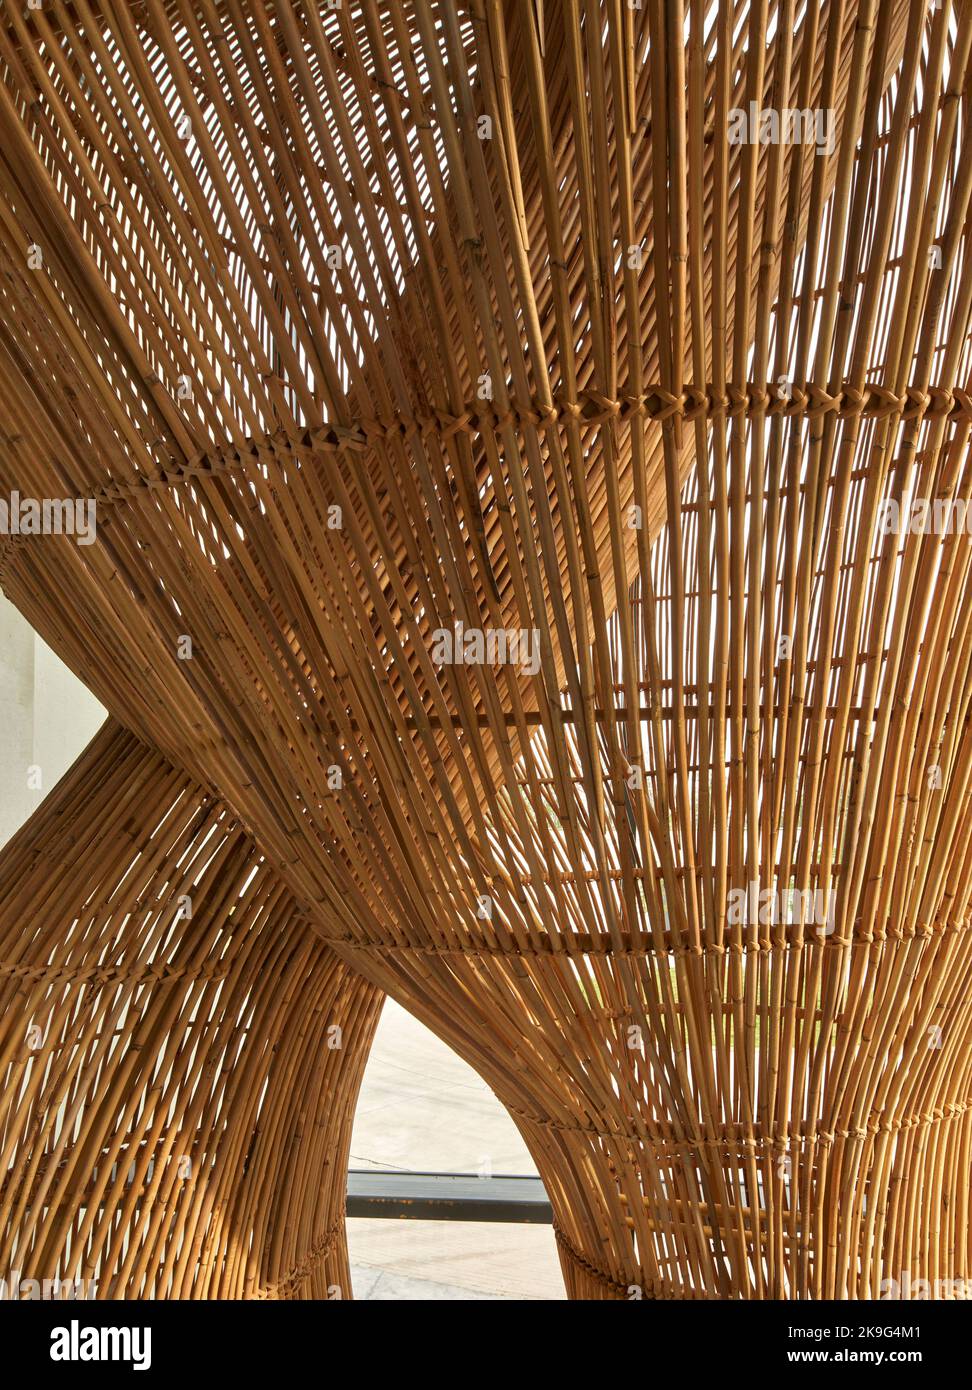 Kurvenreiche Rattan-Installation. Eisballfabrik, Waregem, Belgien. Architekt: Enter Architecture Ltd, 2022. Stockfoto